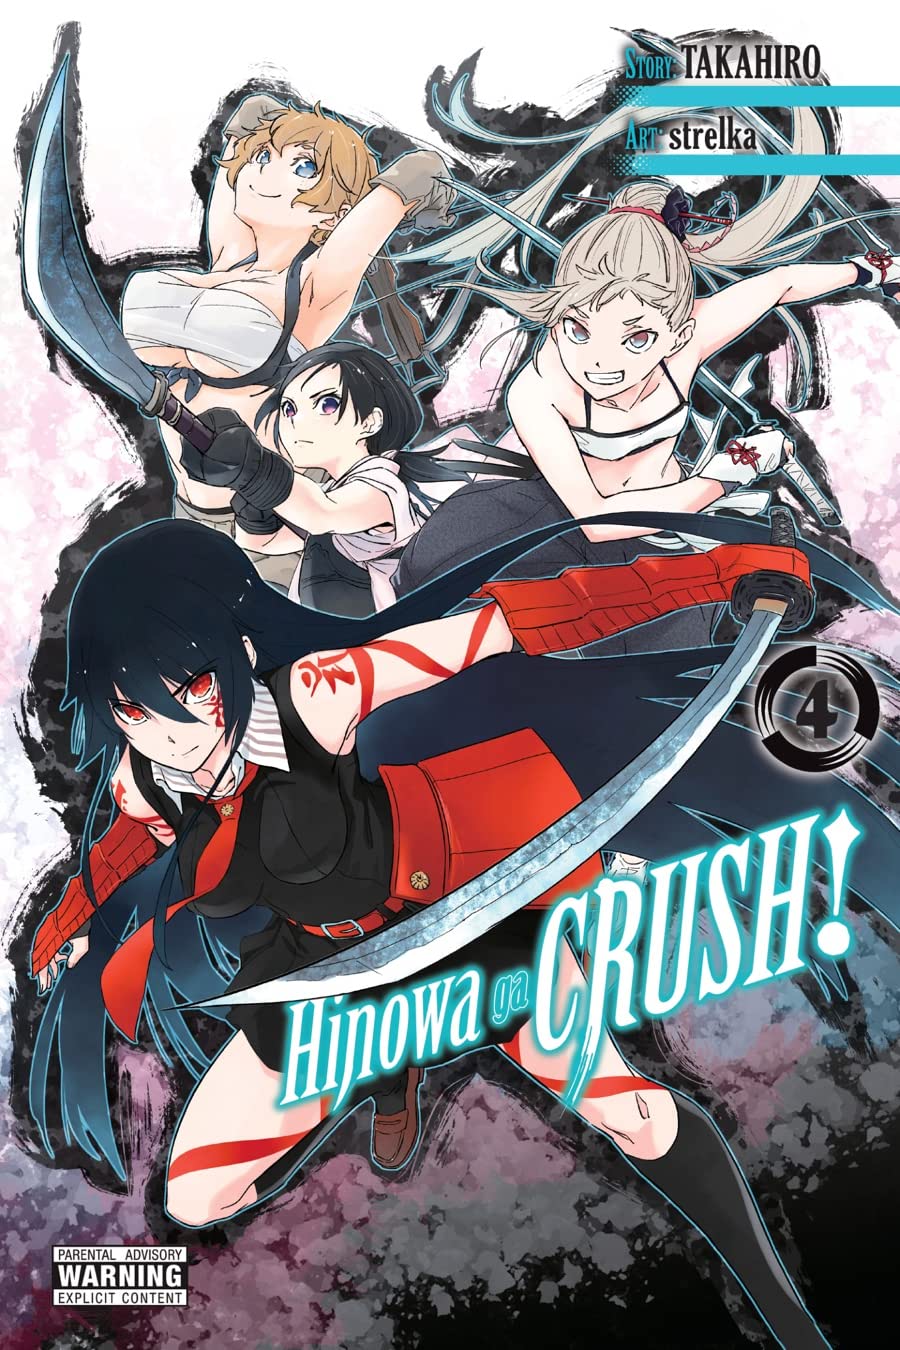 Hinowa ga Crush! Volume 4